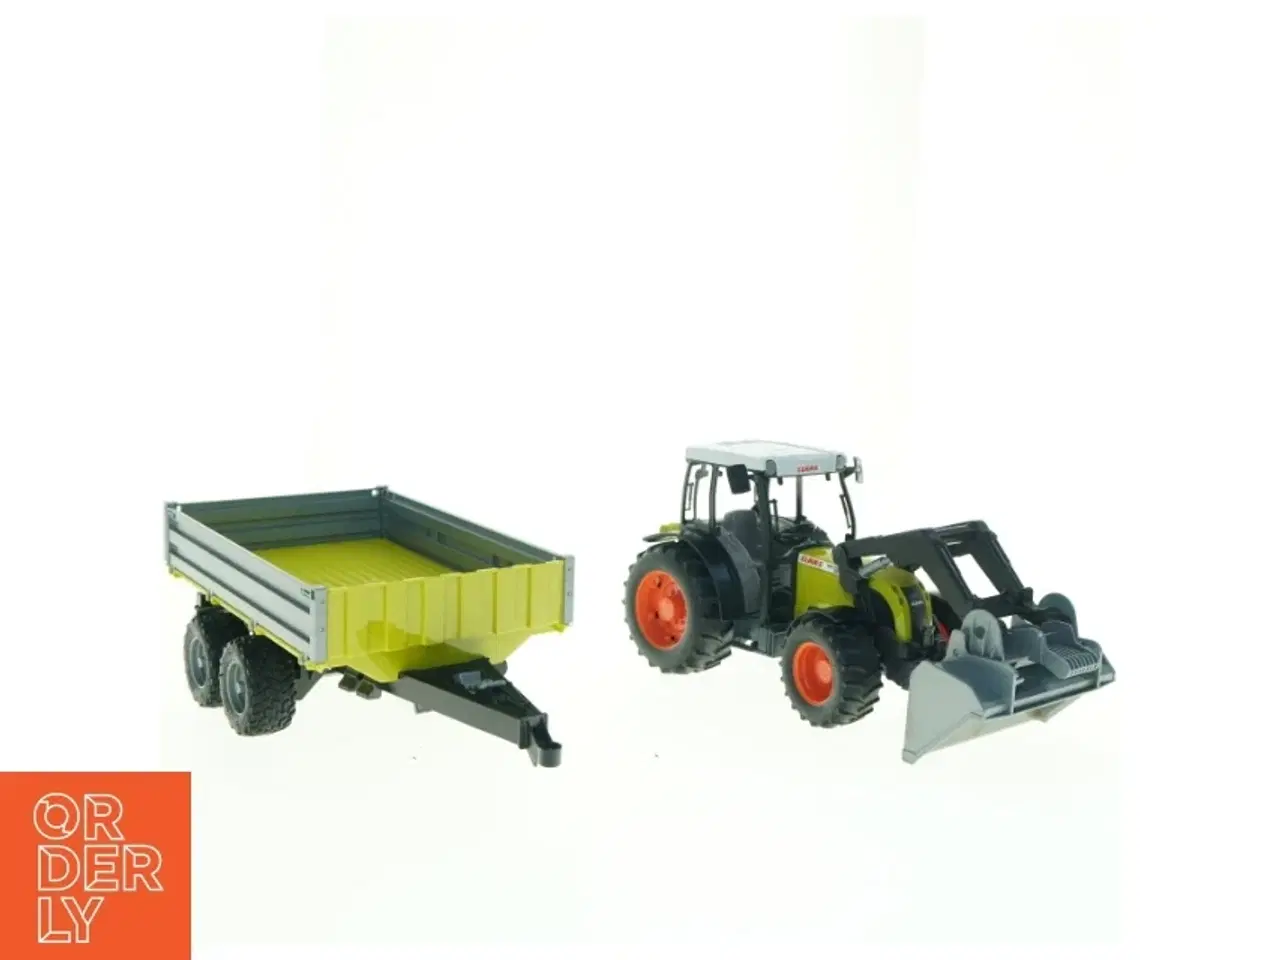 Billede 1 - Bruder Claas Traktor med Frontlæsser og Vogn fra Brudor (str. 30 x, 16 cm og 36 x 13 cm)